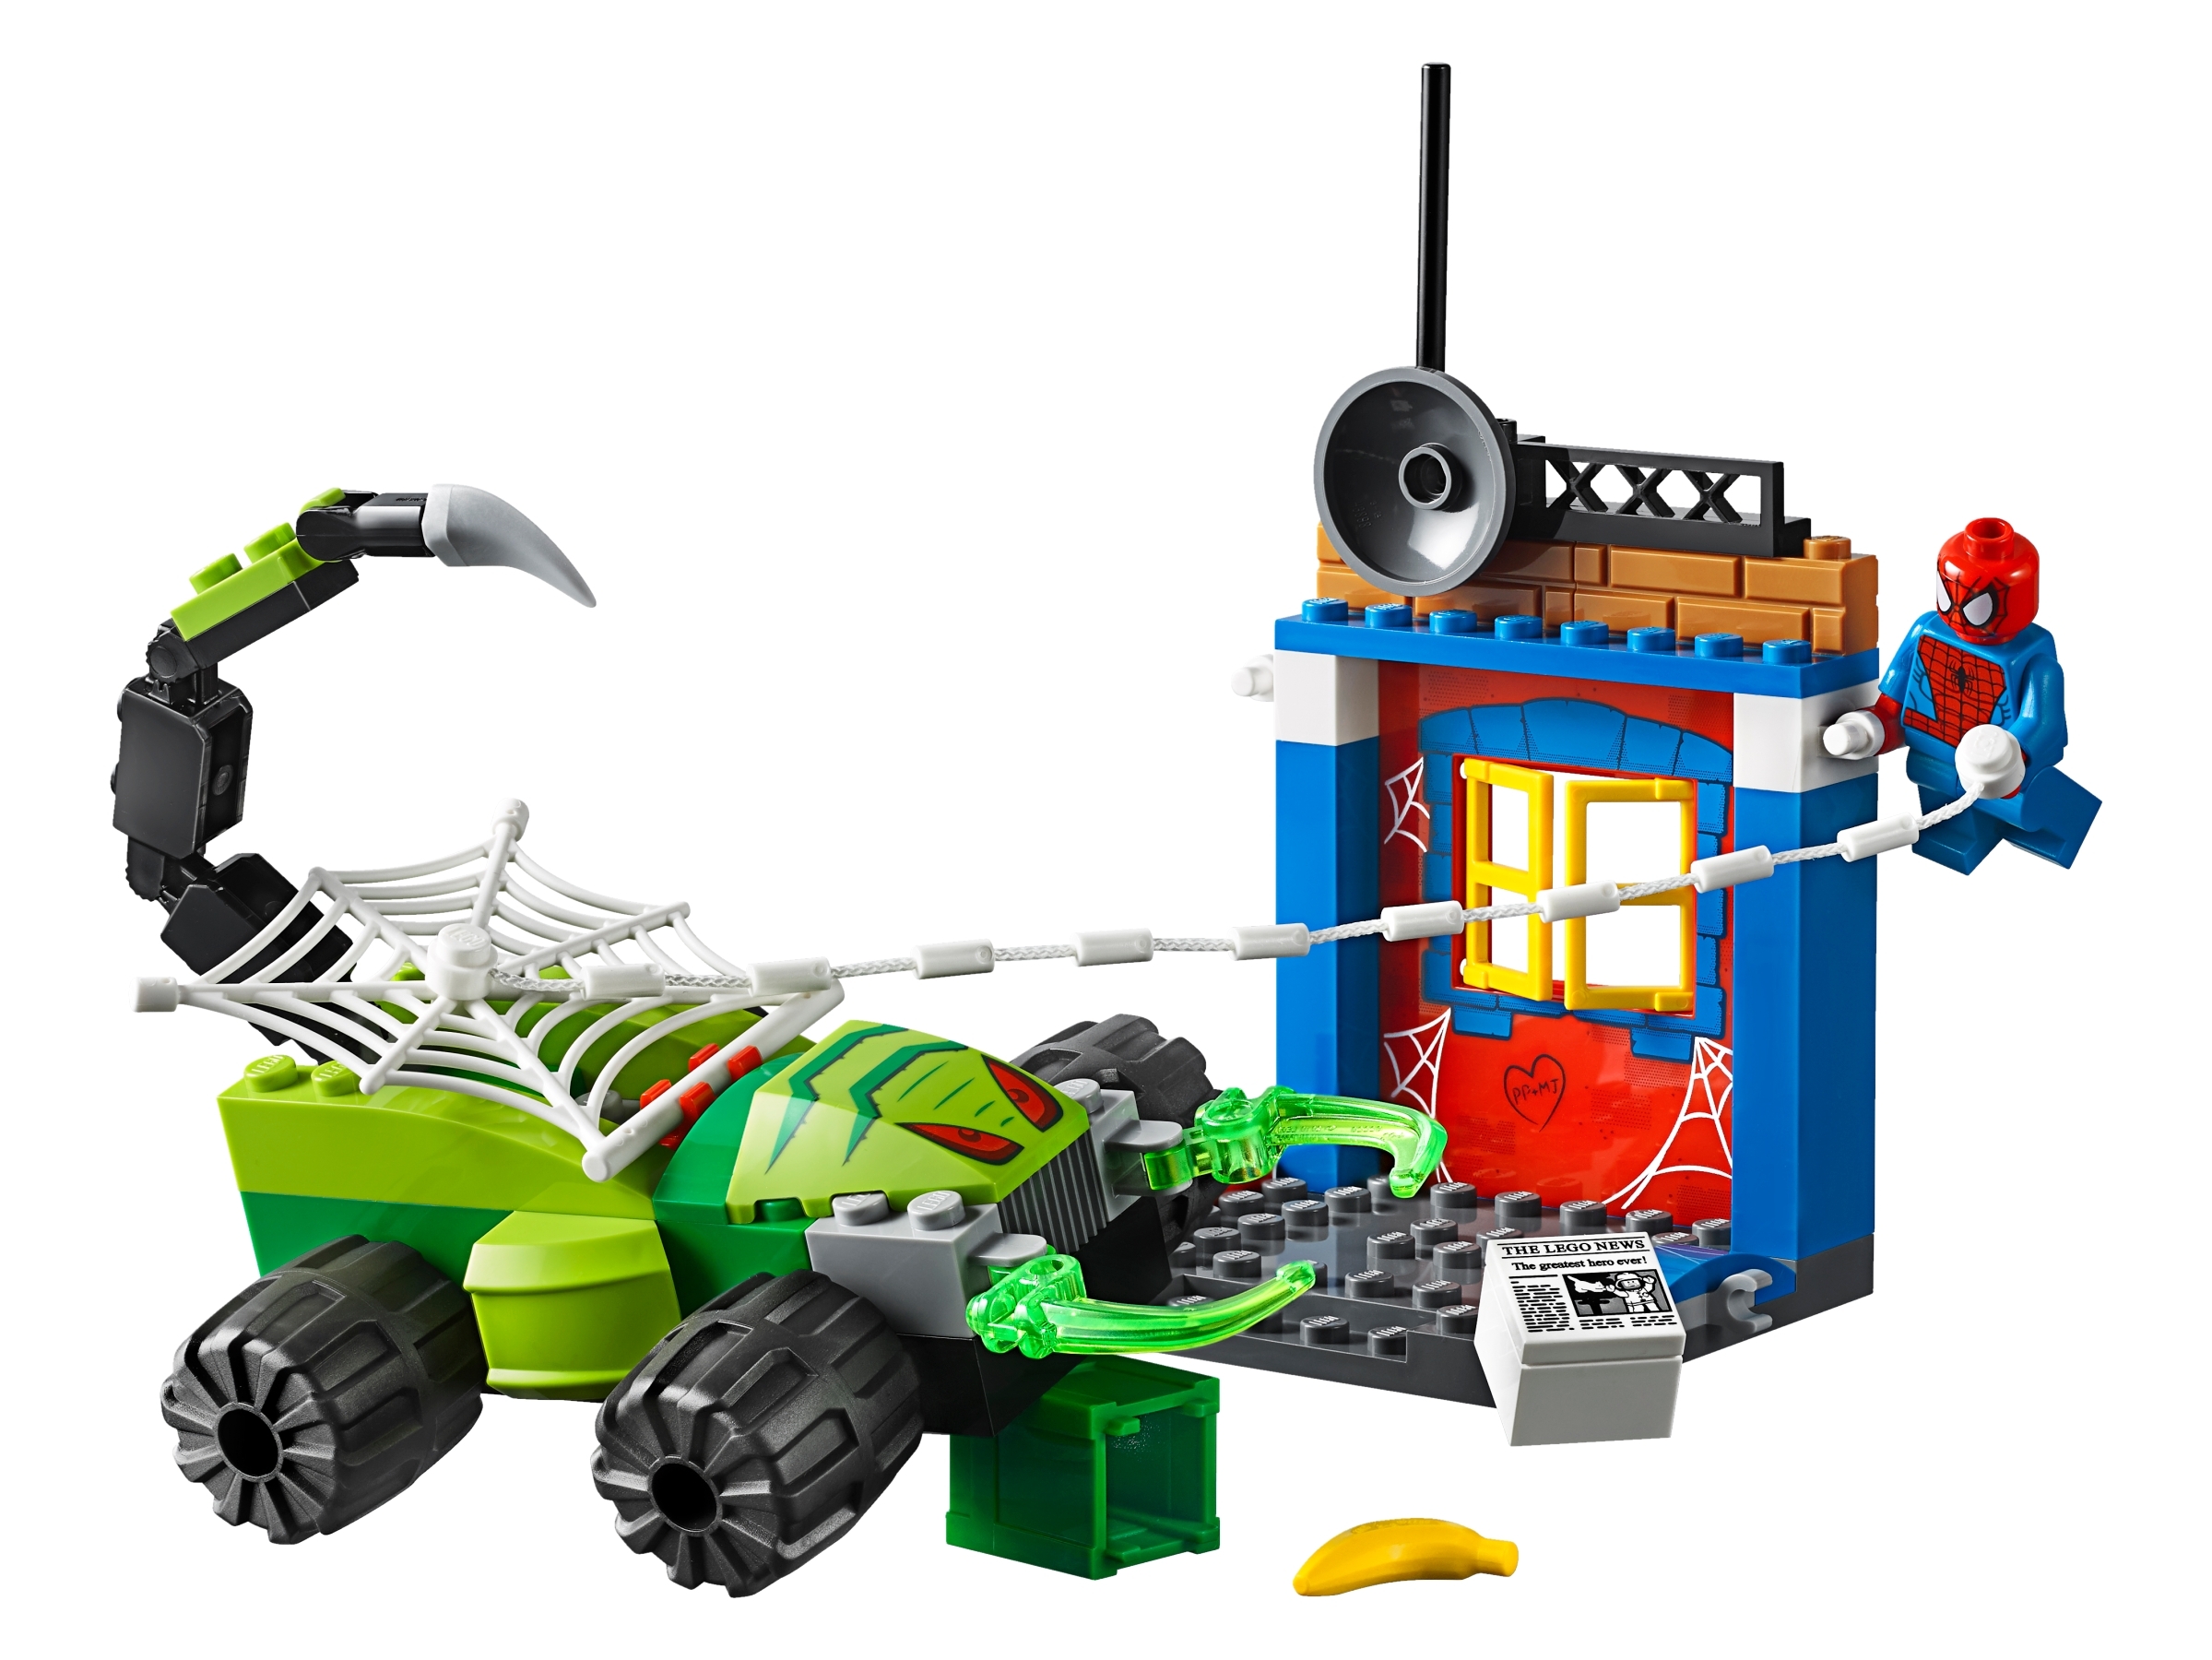 30238 35 # LEGO SPIDER RED 2505 9450 70010 60066 71010 4 Piece